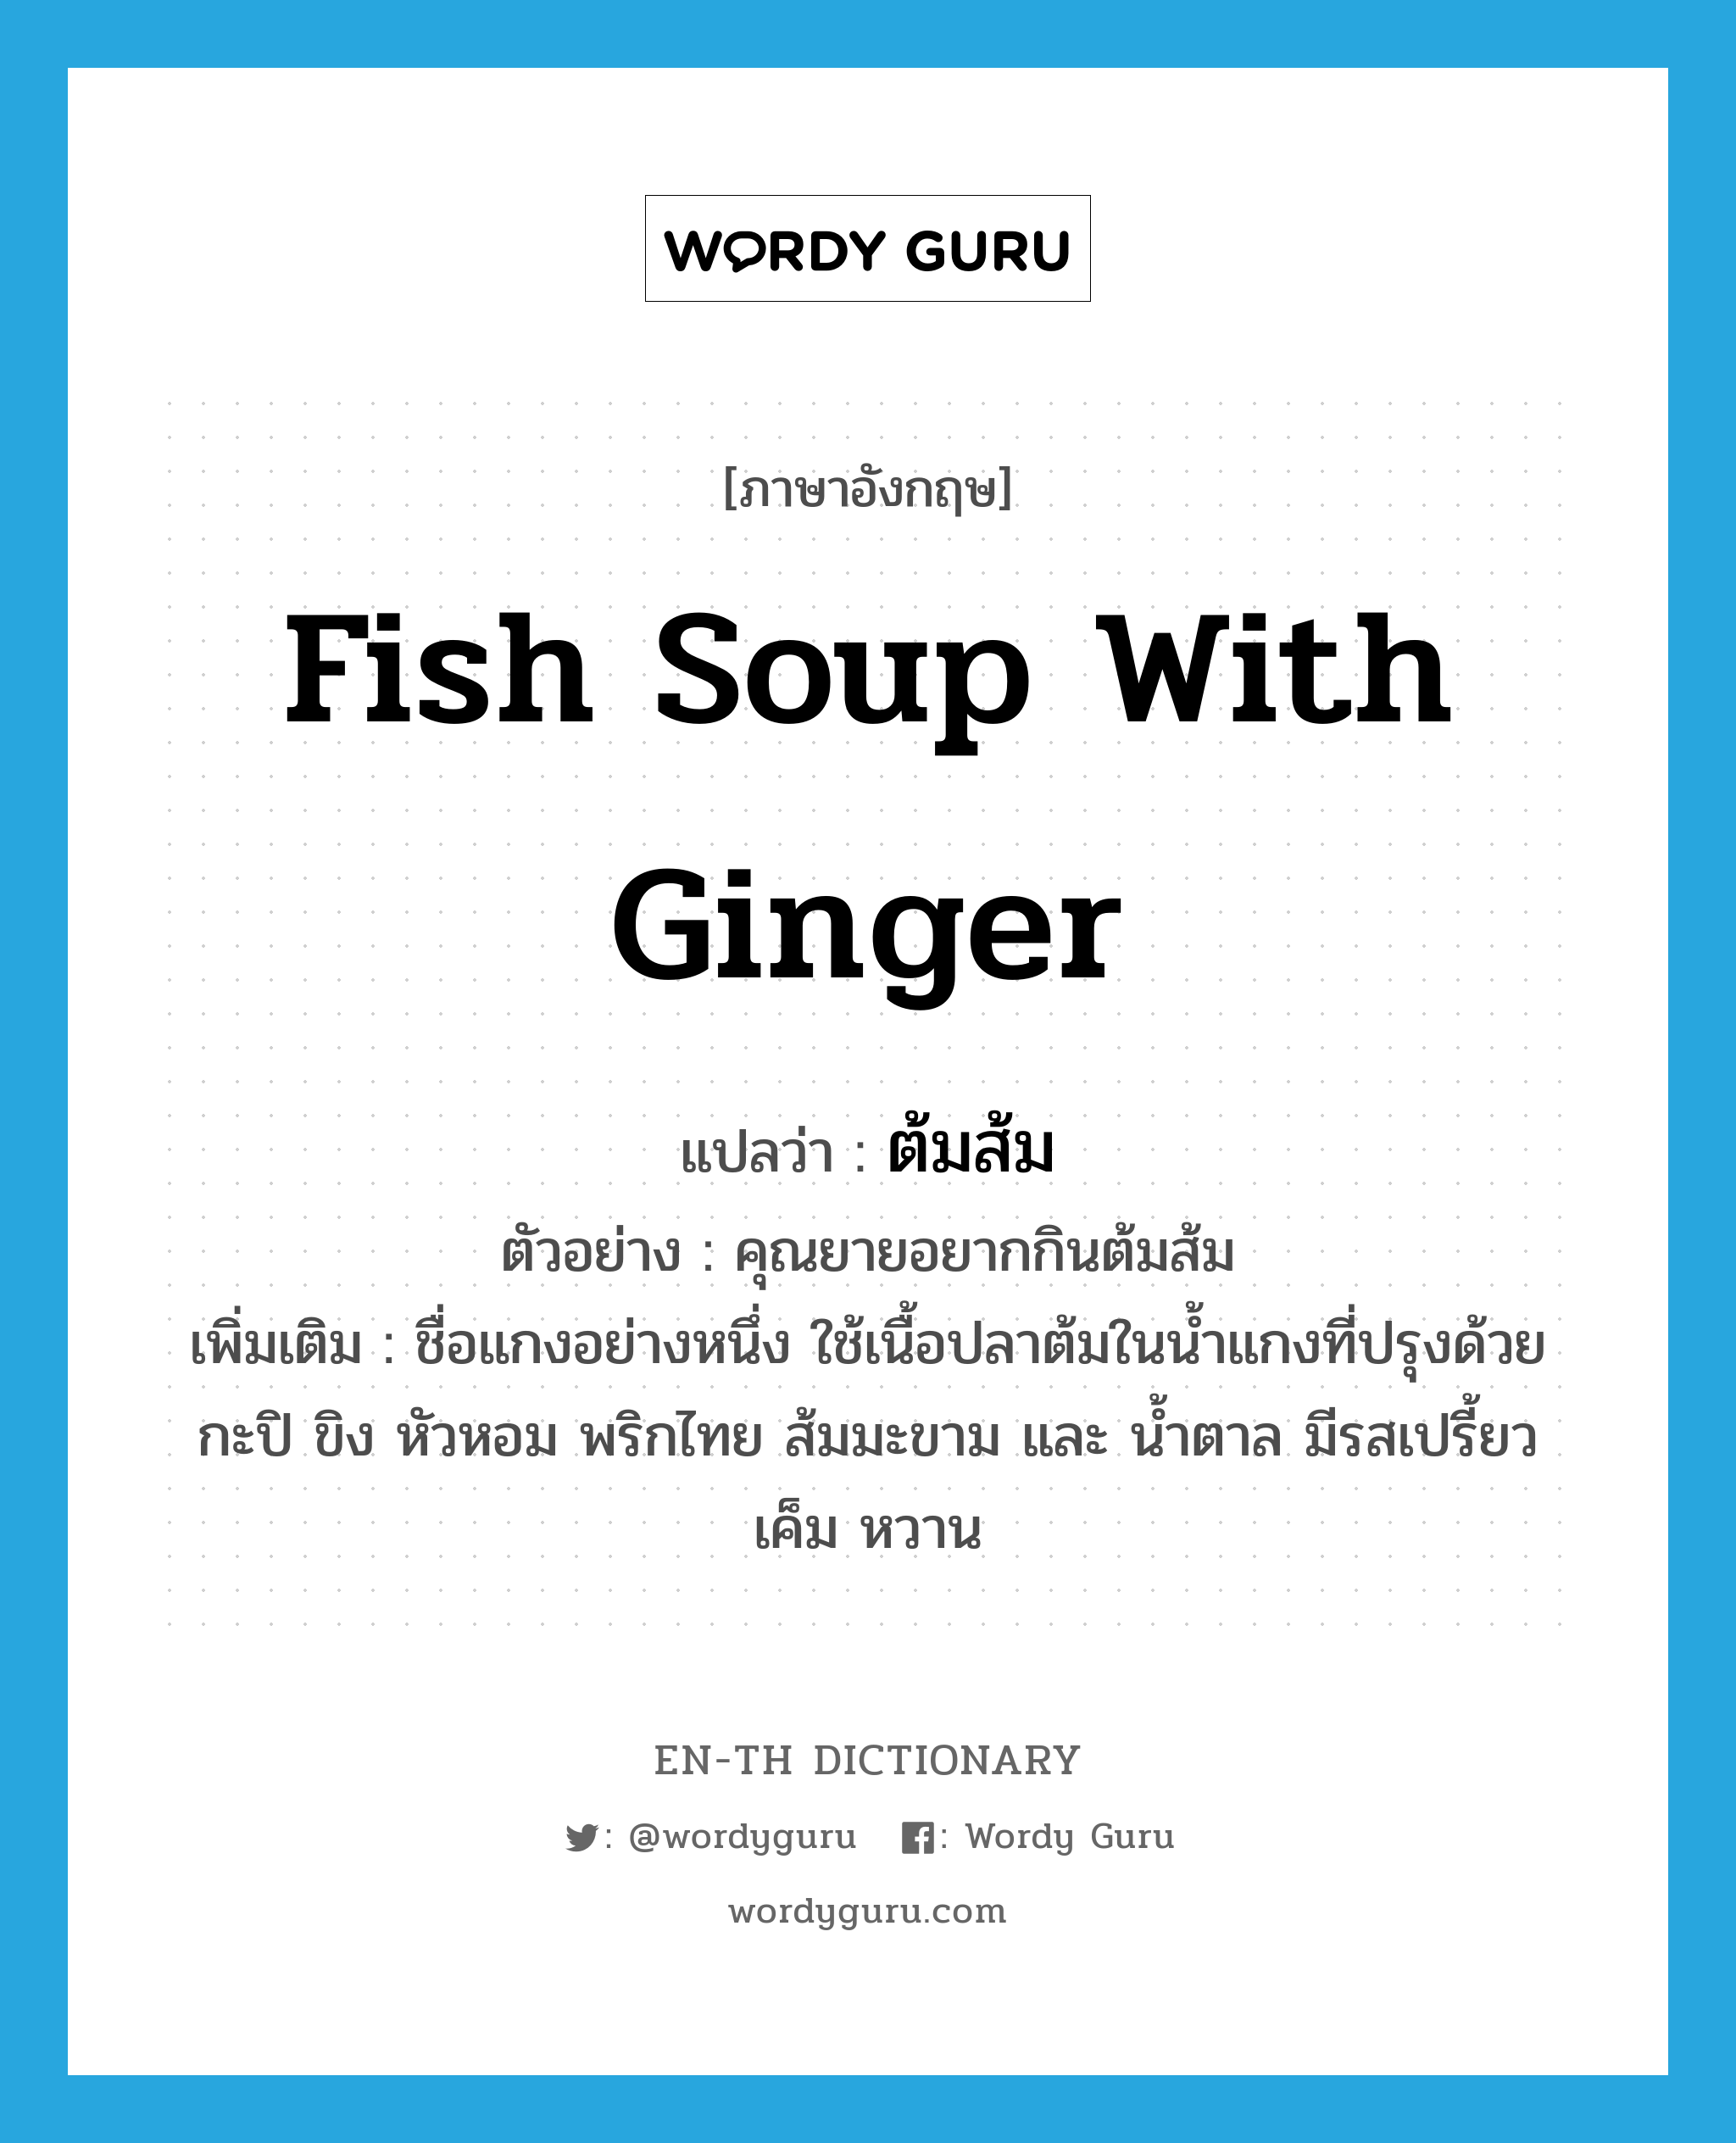 fish soup with ginger แปลว่า?, คำศัพท์ภาษาอังกฤษ fish soup with ginger แปลว่า ต้มส้ม ประเภท N ตัวอย่าง คุณยายอยากกินต้มส้ม เพิ่มเติม ชื่อแกงอย่างหนึ่ง ใช้เนื้อปลาต้มในน้ำแกงที่ปรุงด้วยกะปิ ขิง หัวหอม พริกไทย ส้มมะขาม และ น้ำตาล มีรสเปรี้ยว เค็ม หวาน หมวด N